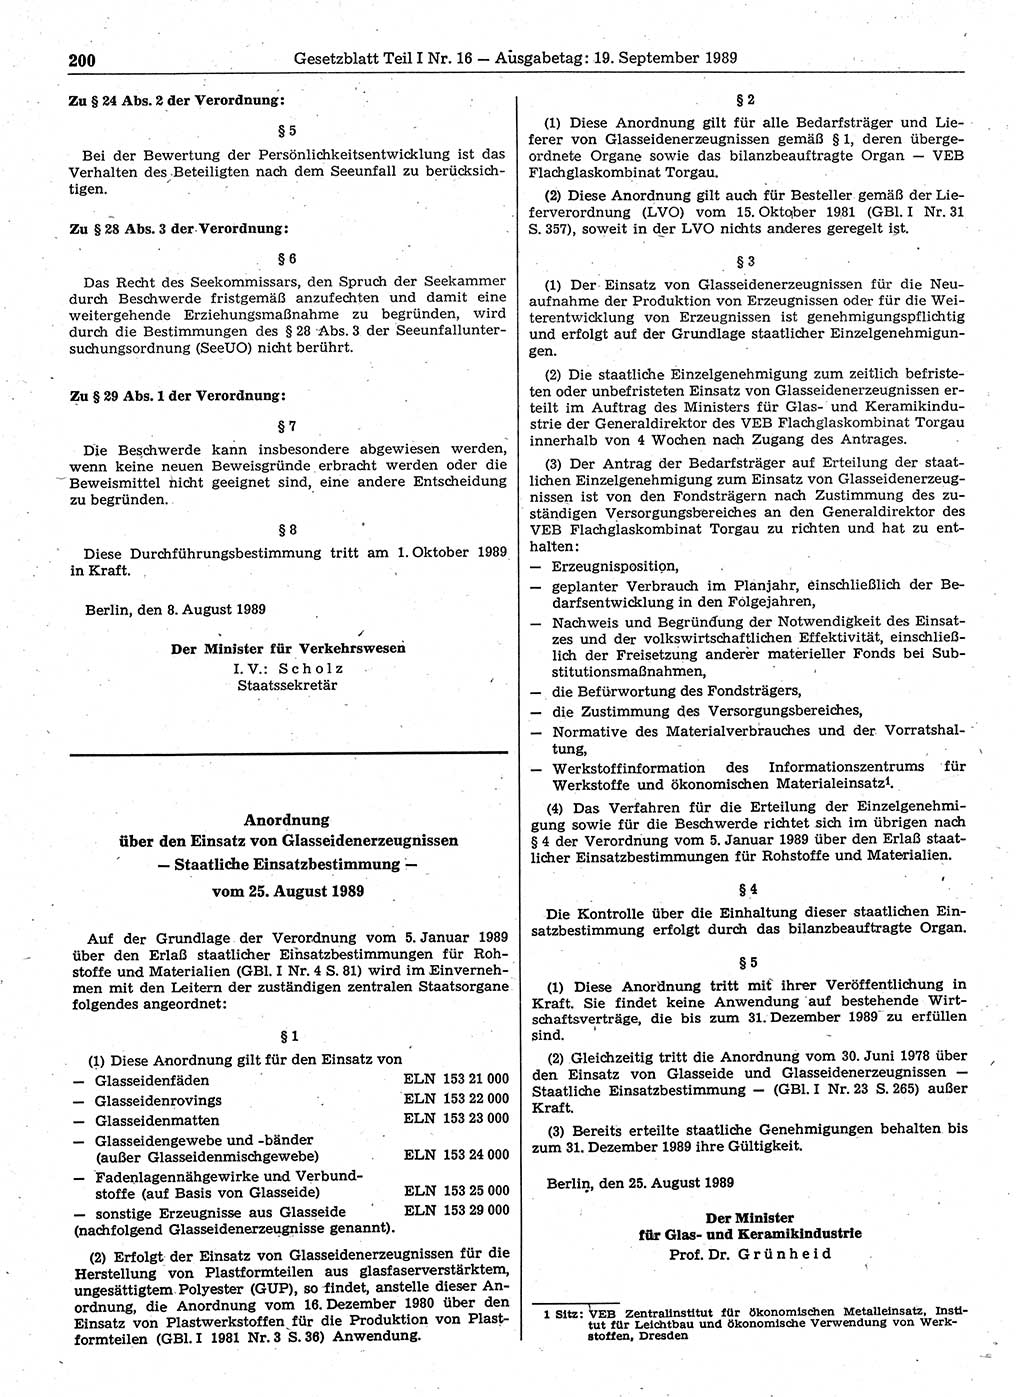 Gesetzblatt (GBl.) der Deutschen Demokratischen Republik (DDR) Teil Ⅰ 1989, Seite 200 (GBl. DDR Ⅰ 1989, S. 200)